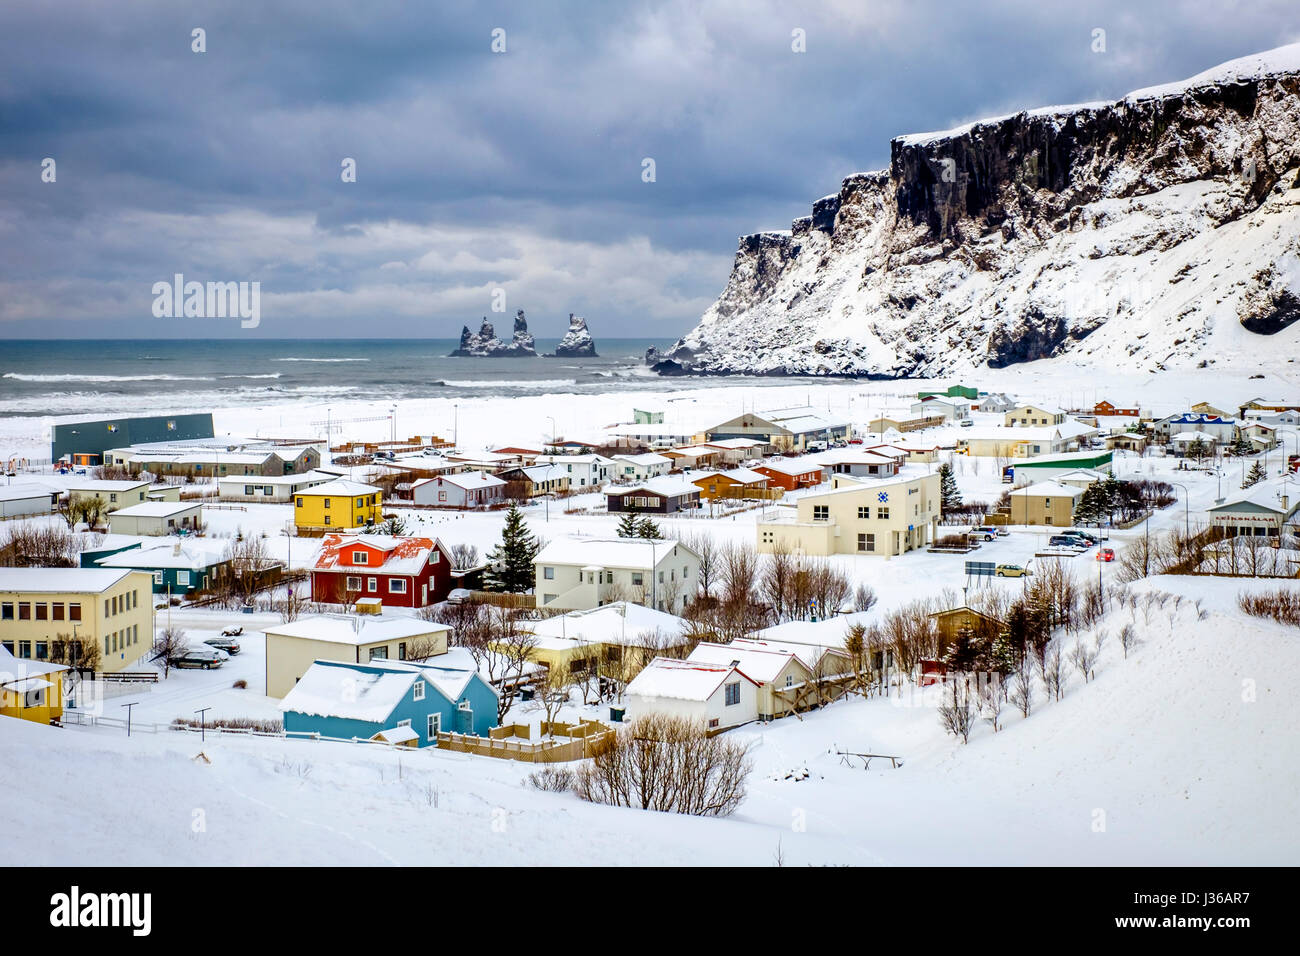 VIK, Islanda - CIRCA NEL MARZO 2015: Vista della città di Vik durante il periodo invernale in Islanda Foto Stock